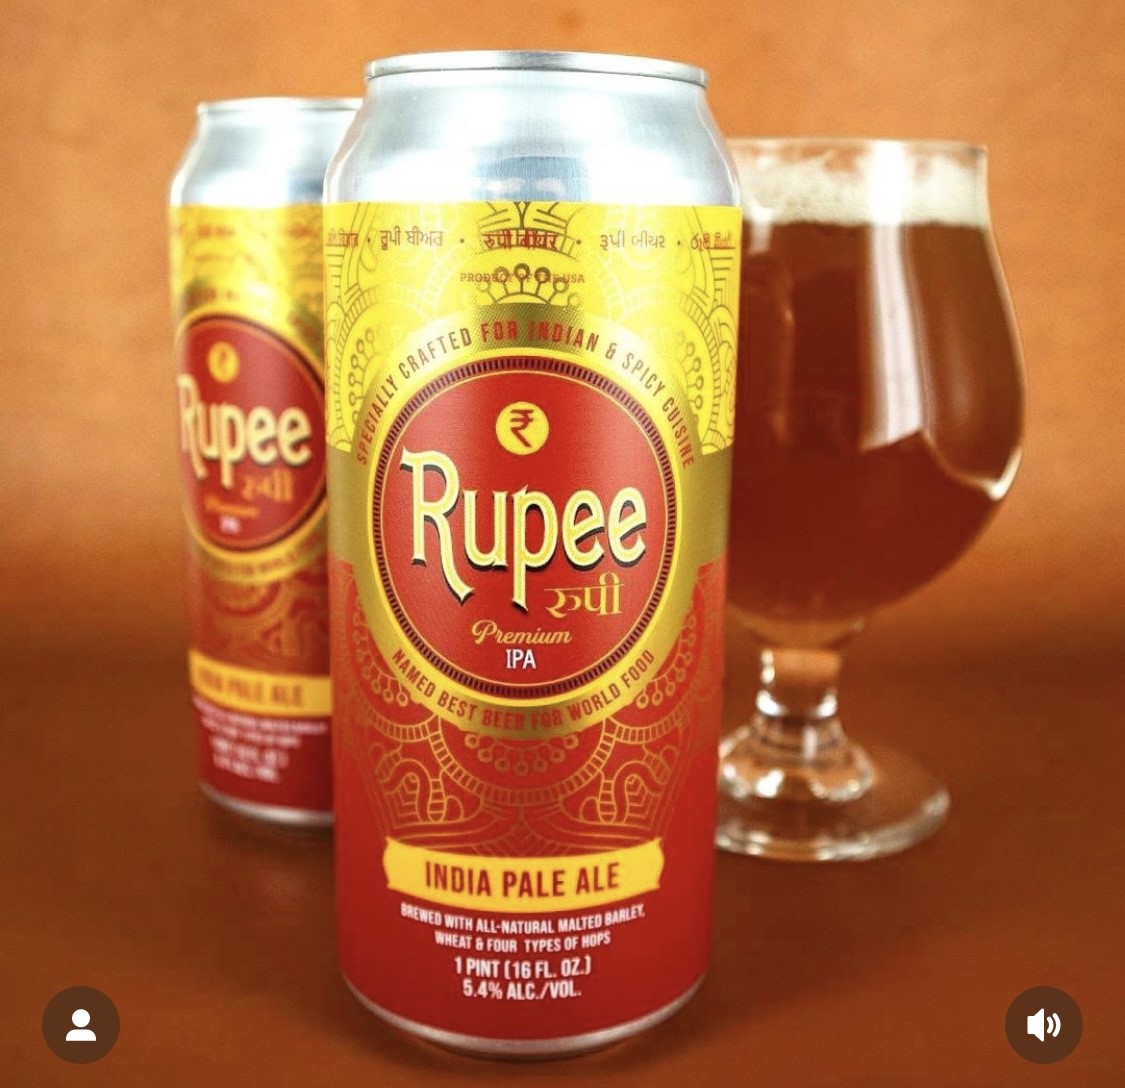 Rupee Beer IPA, image credit Rupee Beer